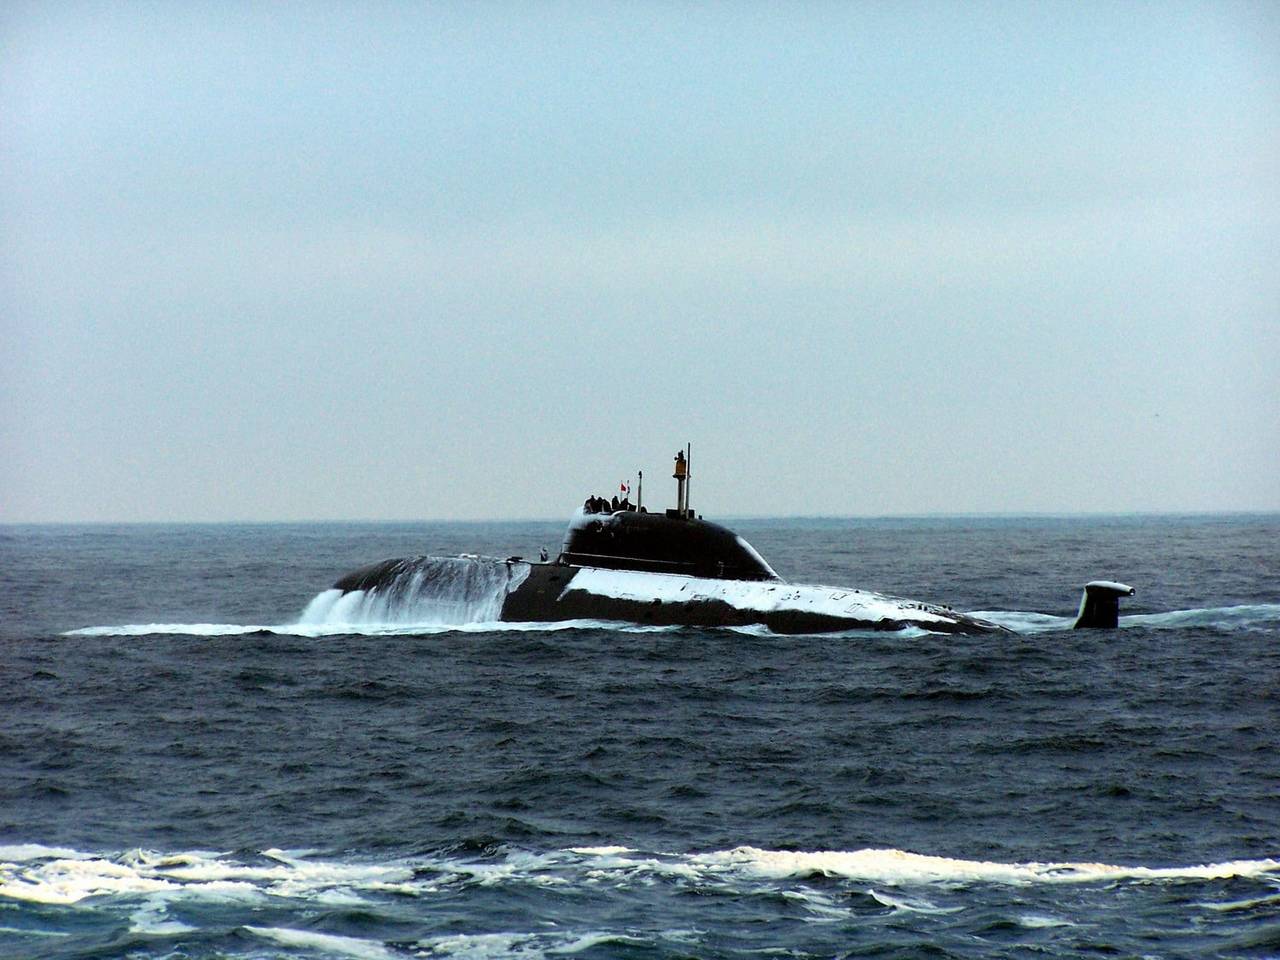 Подводная лодка акула (проект 941): технические характеристики, самый большой атомный крейсер